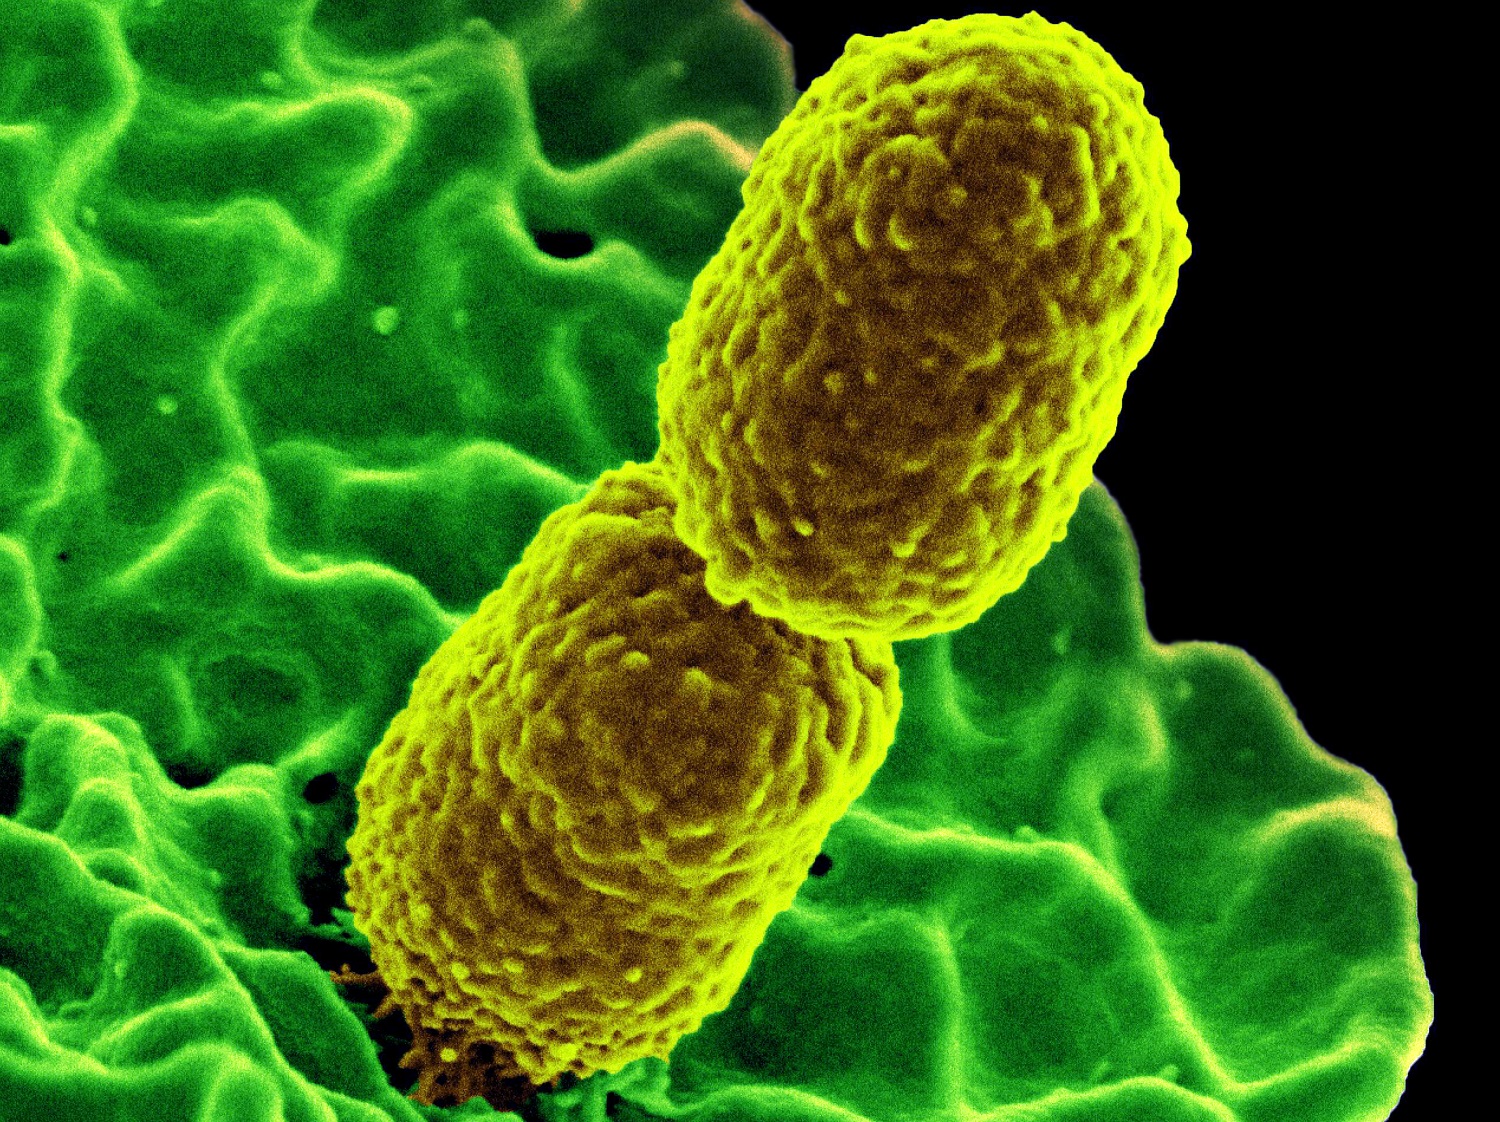 El desarrollo de nuevos antibióticos puede llevar más de 10 años/
National Institute of Allergy and Infectious Diseases (NIAID)